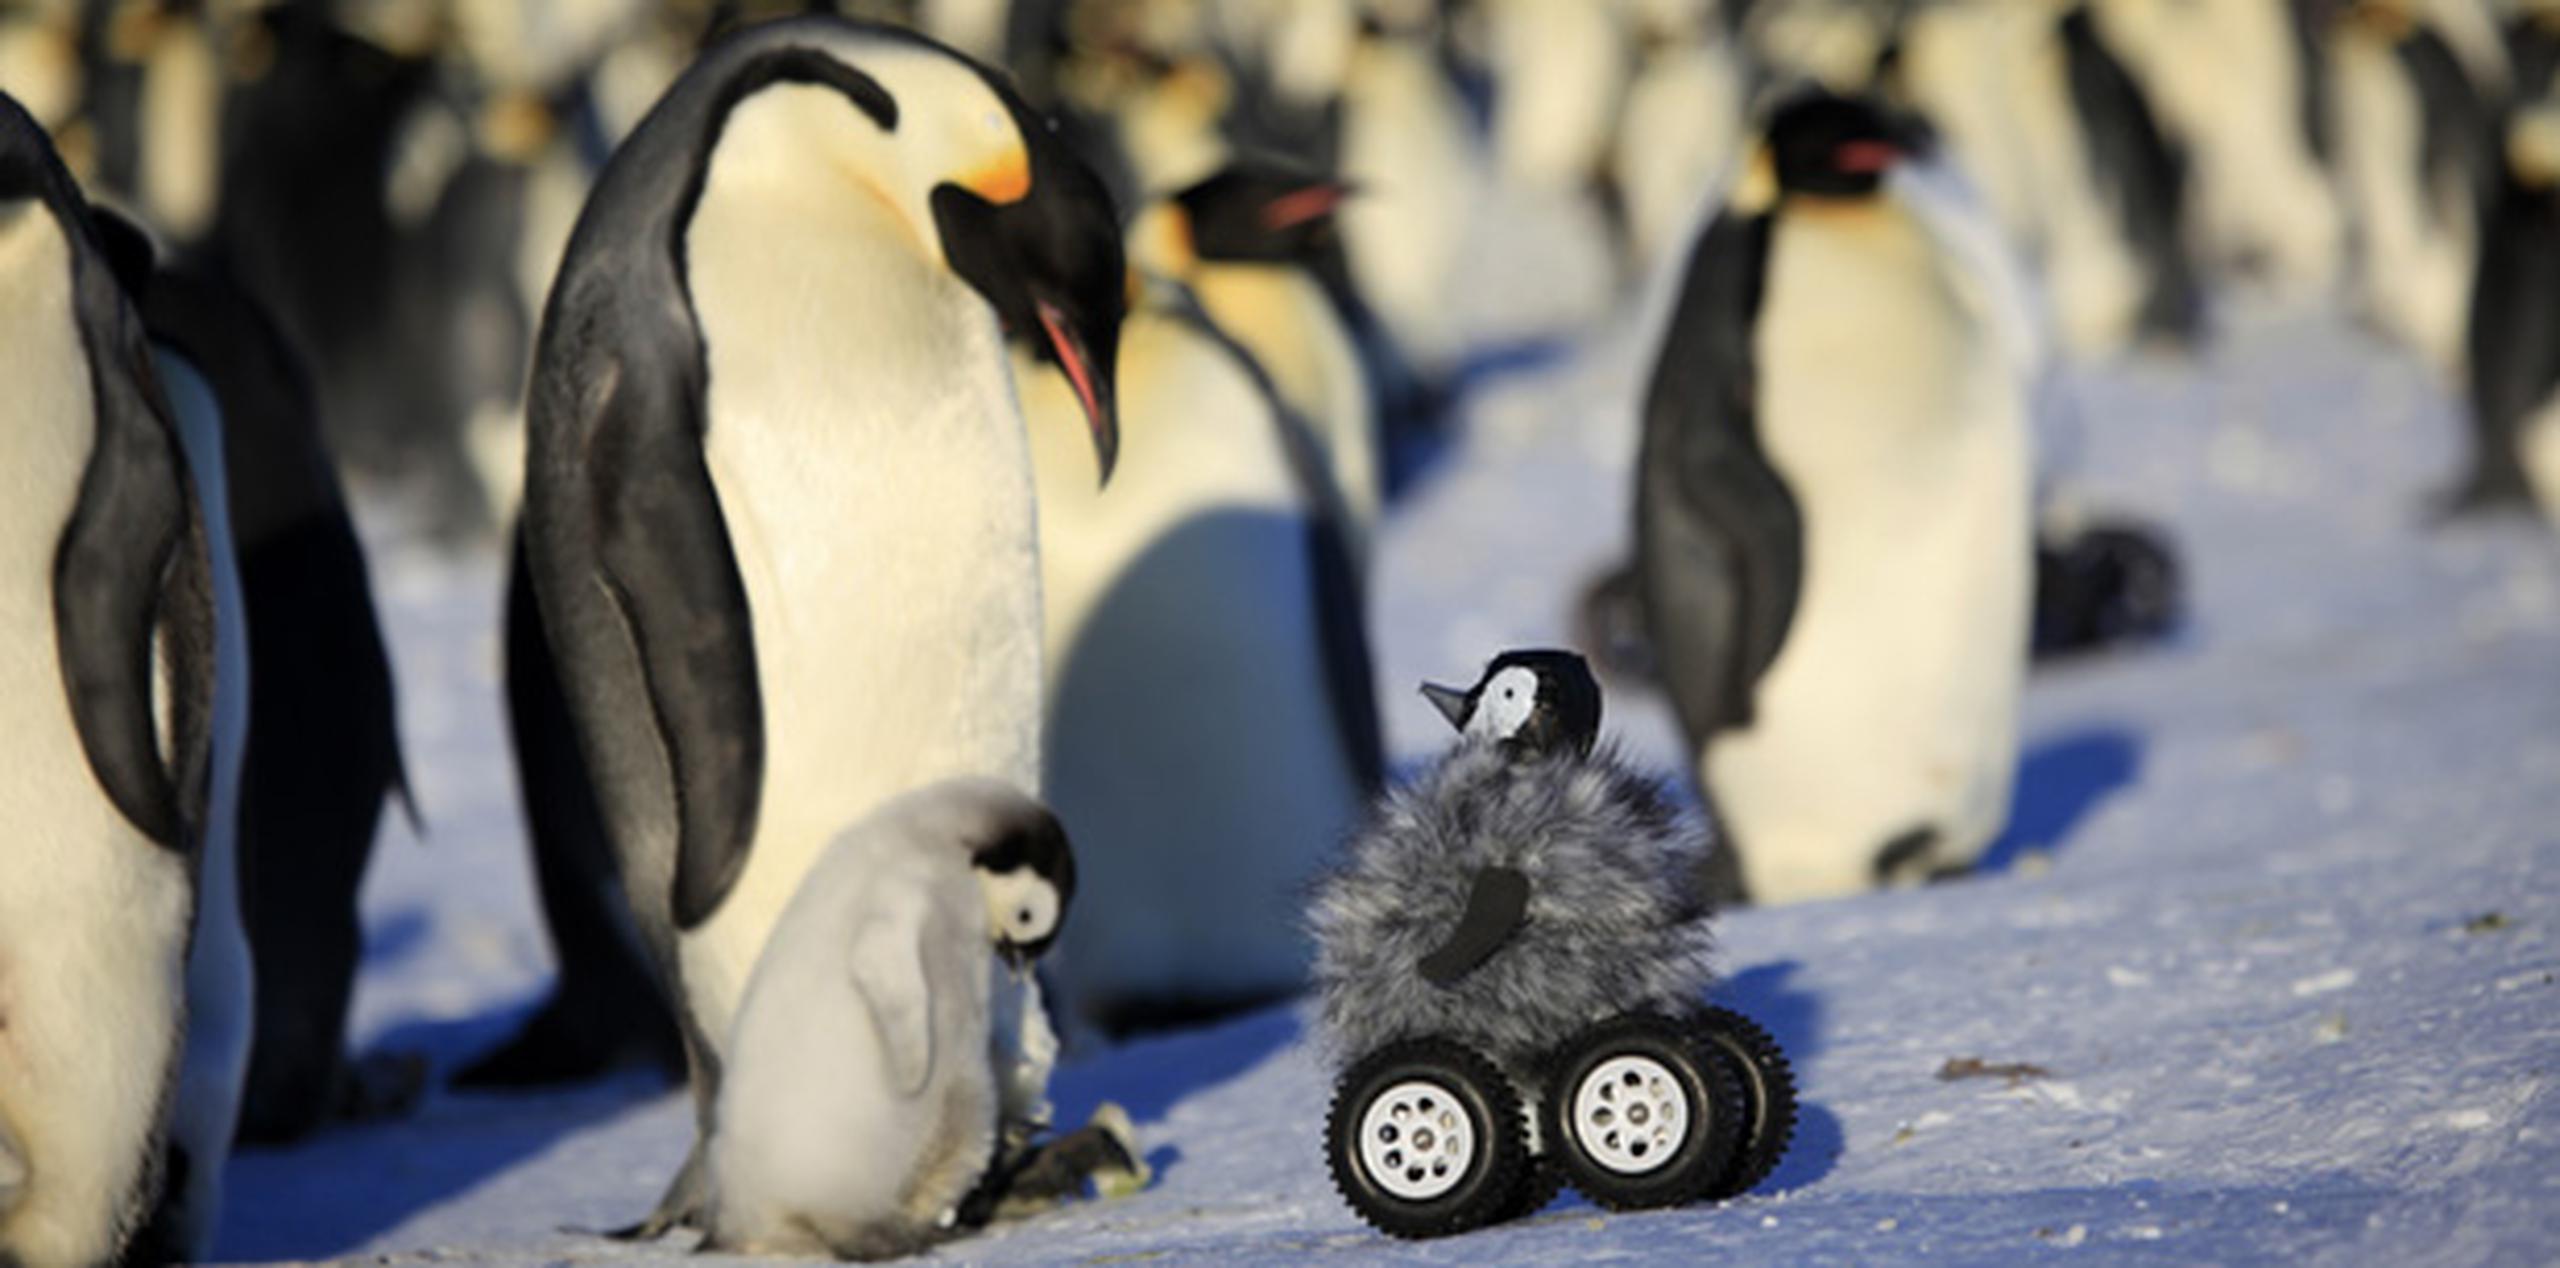 Científicos internacionales e incluso cineastas de documentales crearon un aparato rodante de control remoto disfrazado de polluelo para que se acurruque entre los pingüinos tímidos en Tierra Adelie, en la Antártida. (AP)